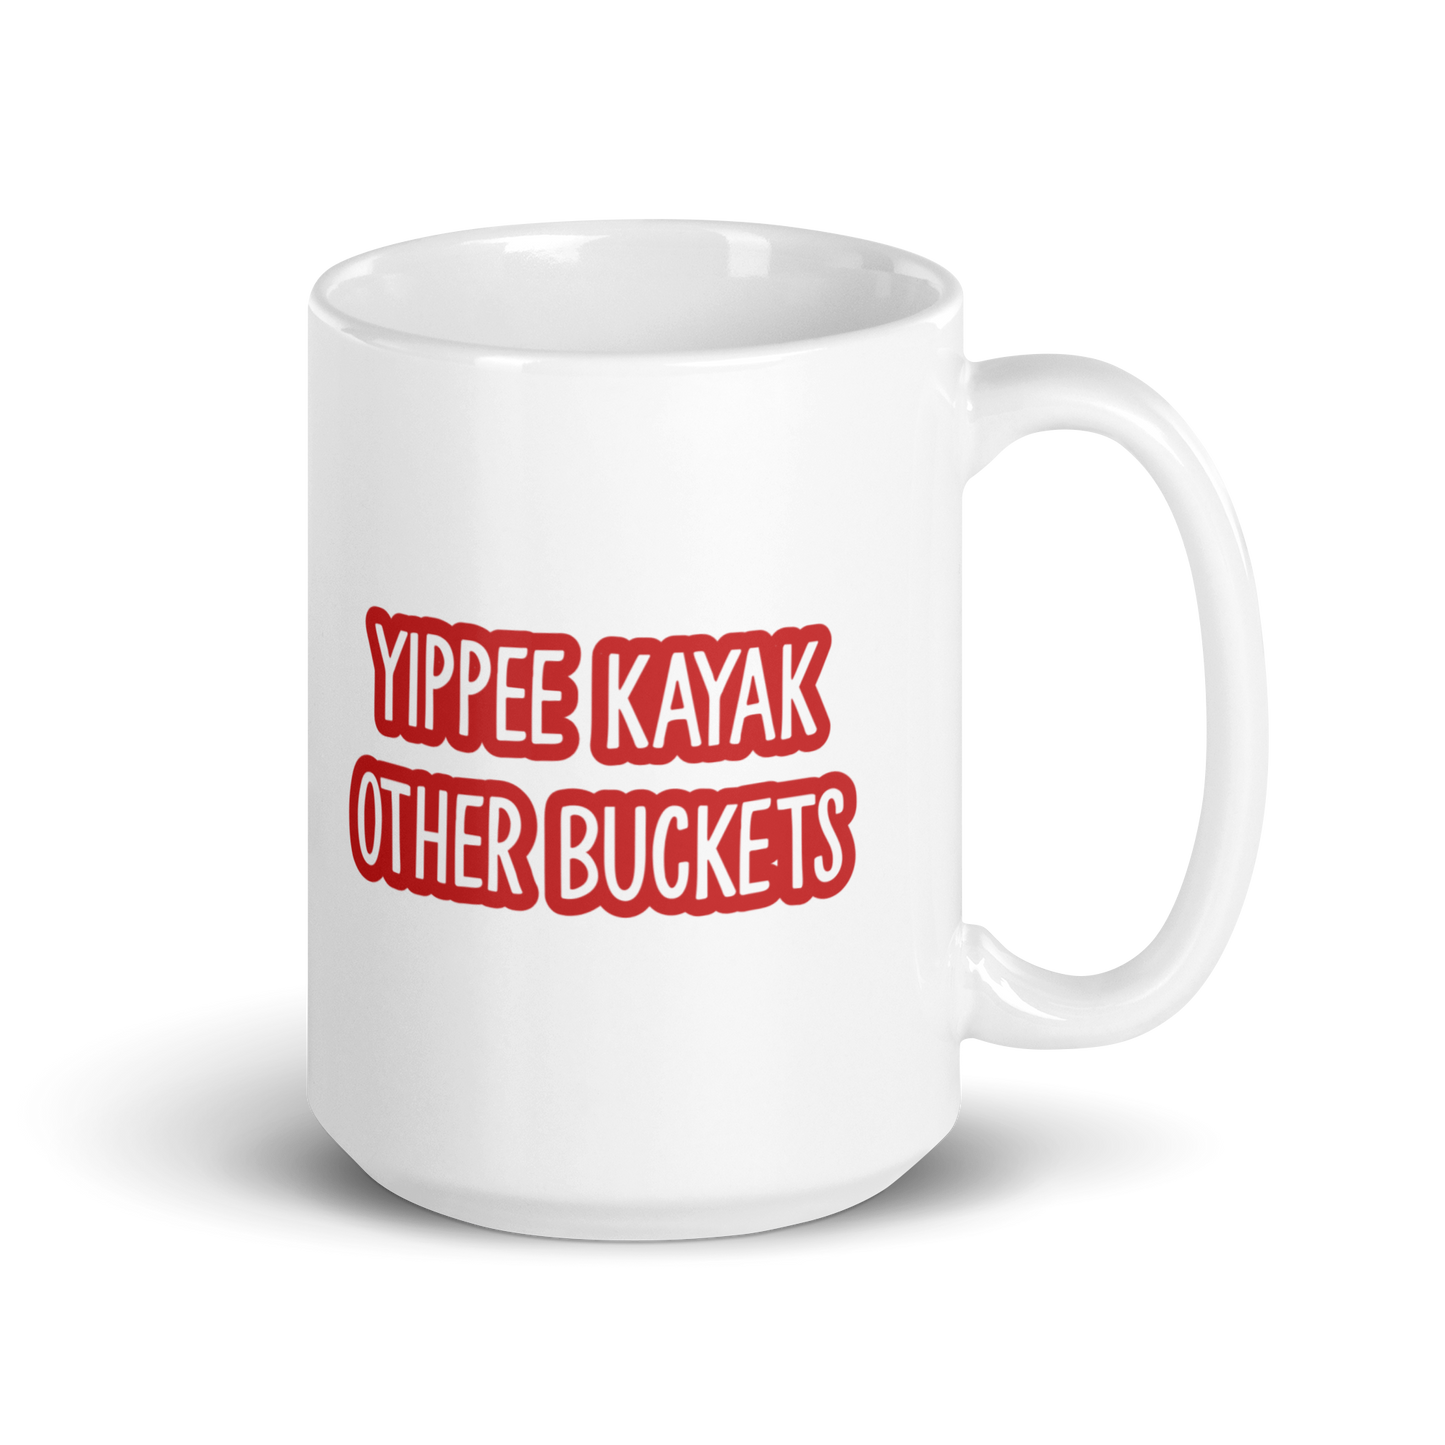 Yippee Kayaks Other Buckets White glossy mug